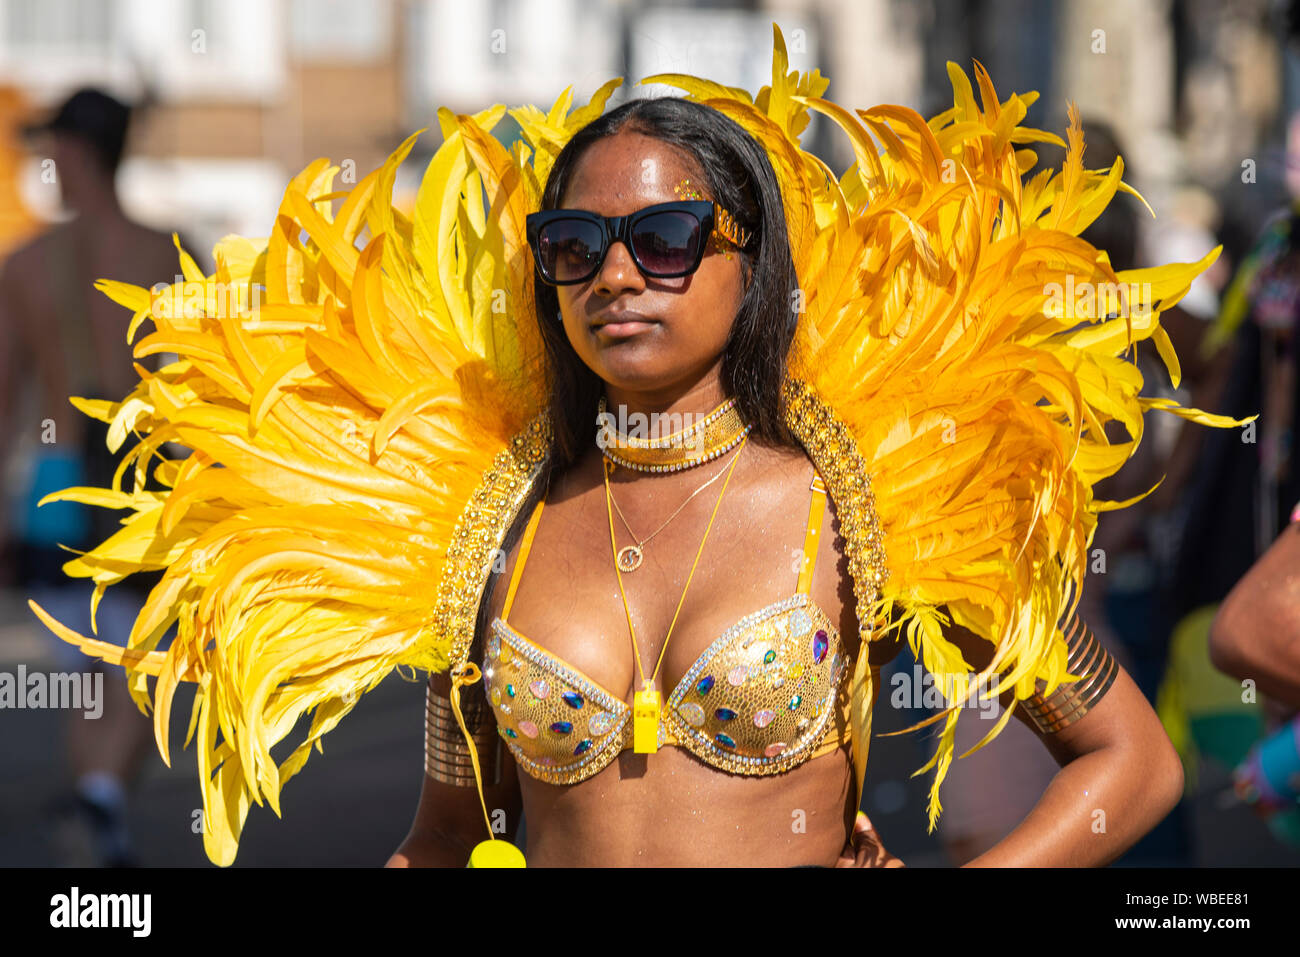 Femme en costume coloré à la jamaïcaine élaborée Notting Hill Carnival Parade finale sur un jour férié lundi Banque D'Images